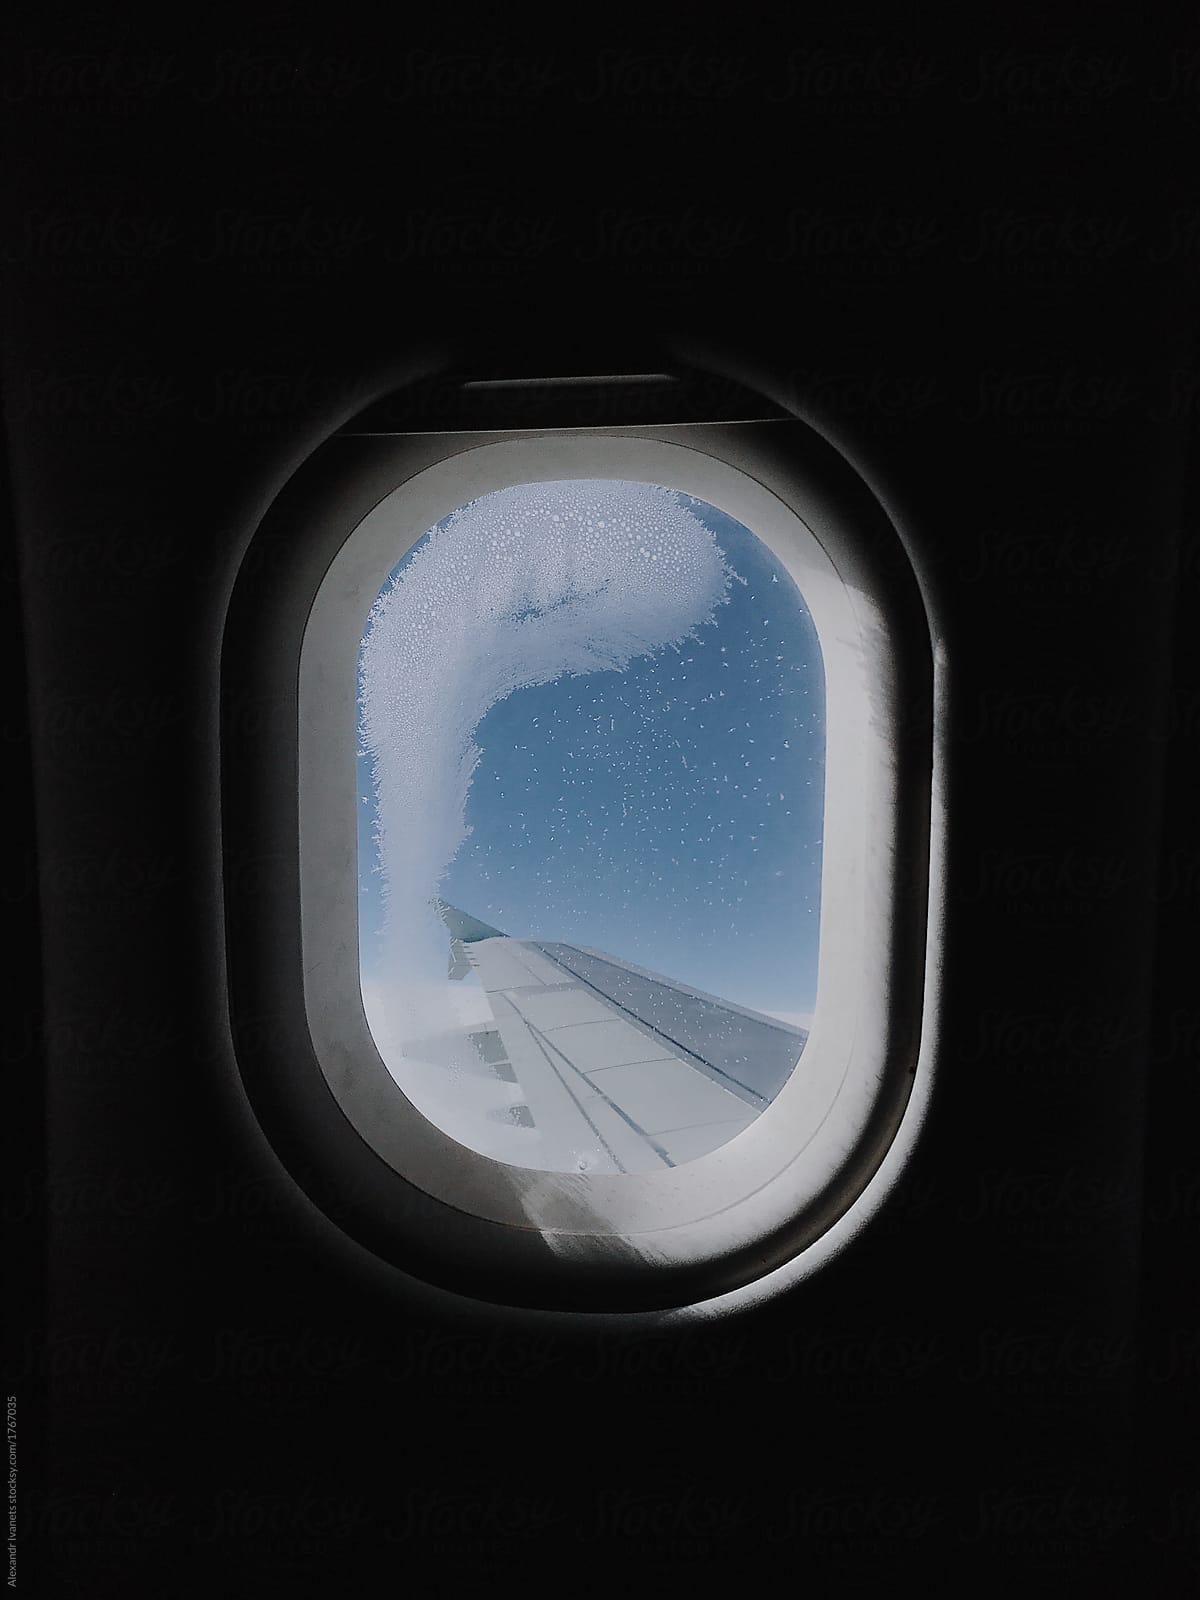 Frozen window in plane